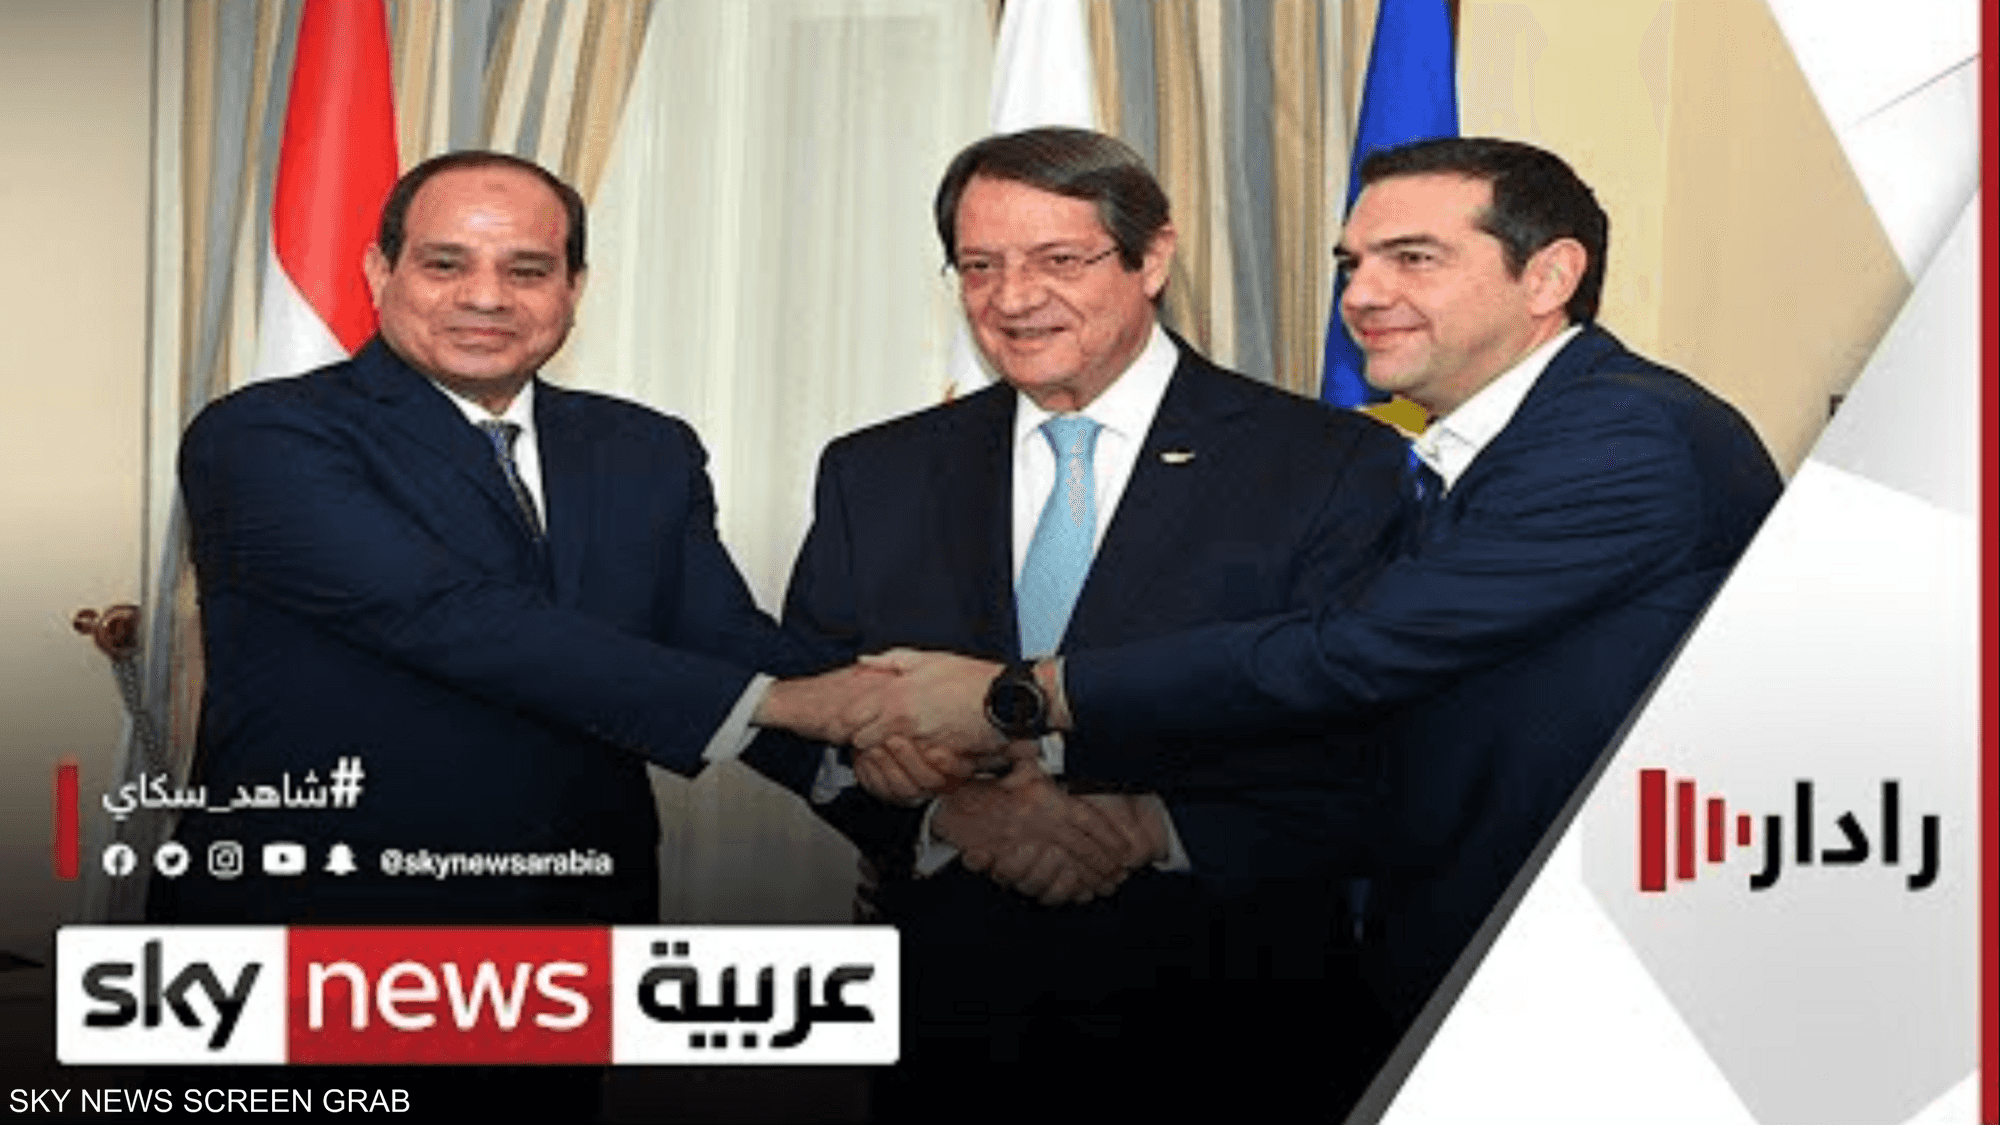 بعد قبرص واليونان.. ما خطوة مصر المقبلة بالربط الكهربائي؟